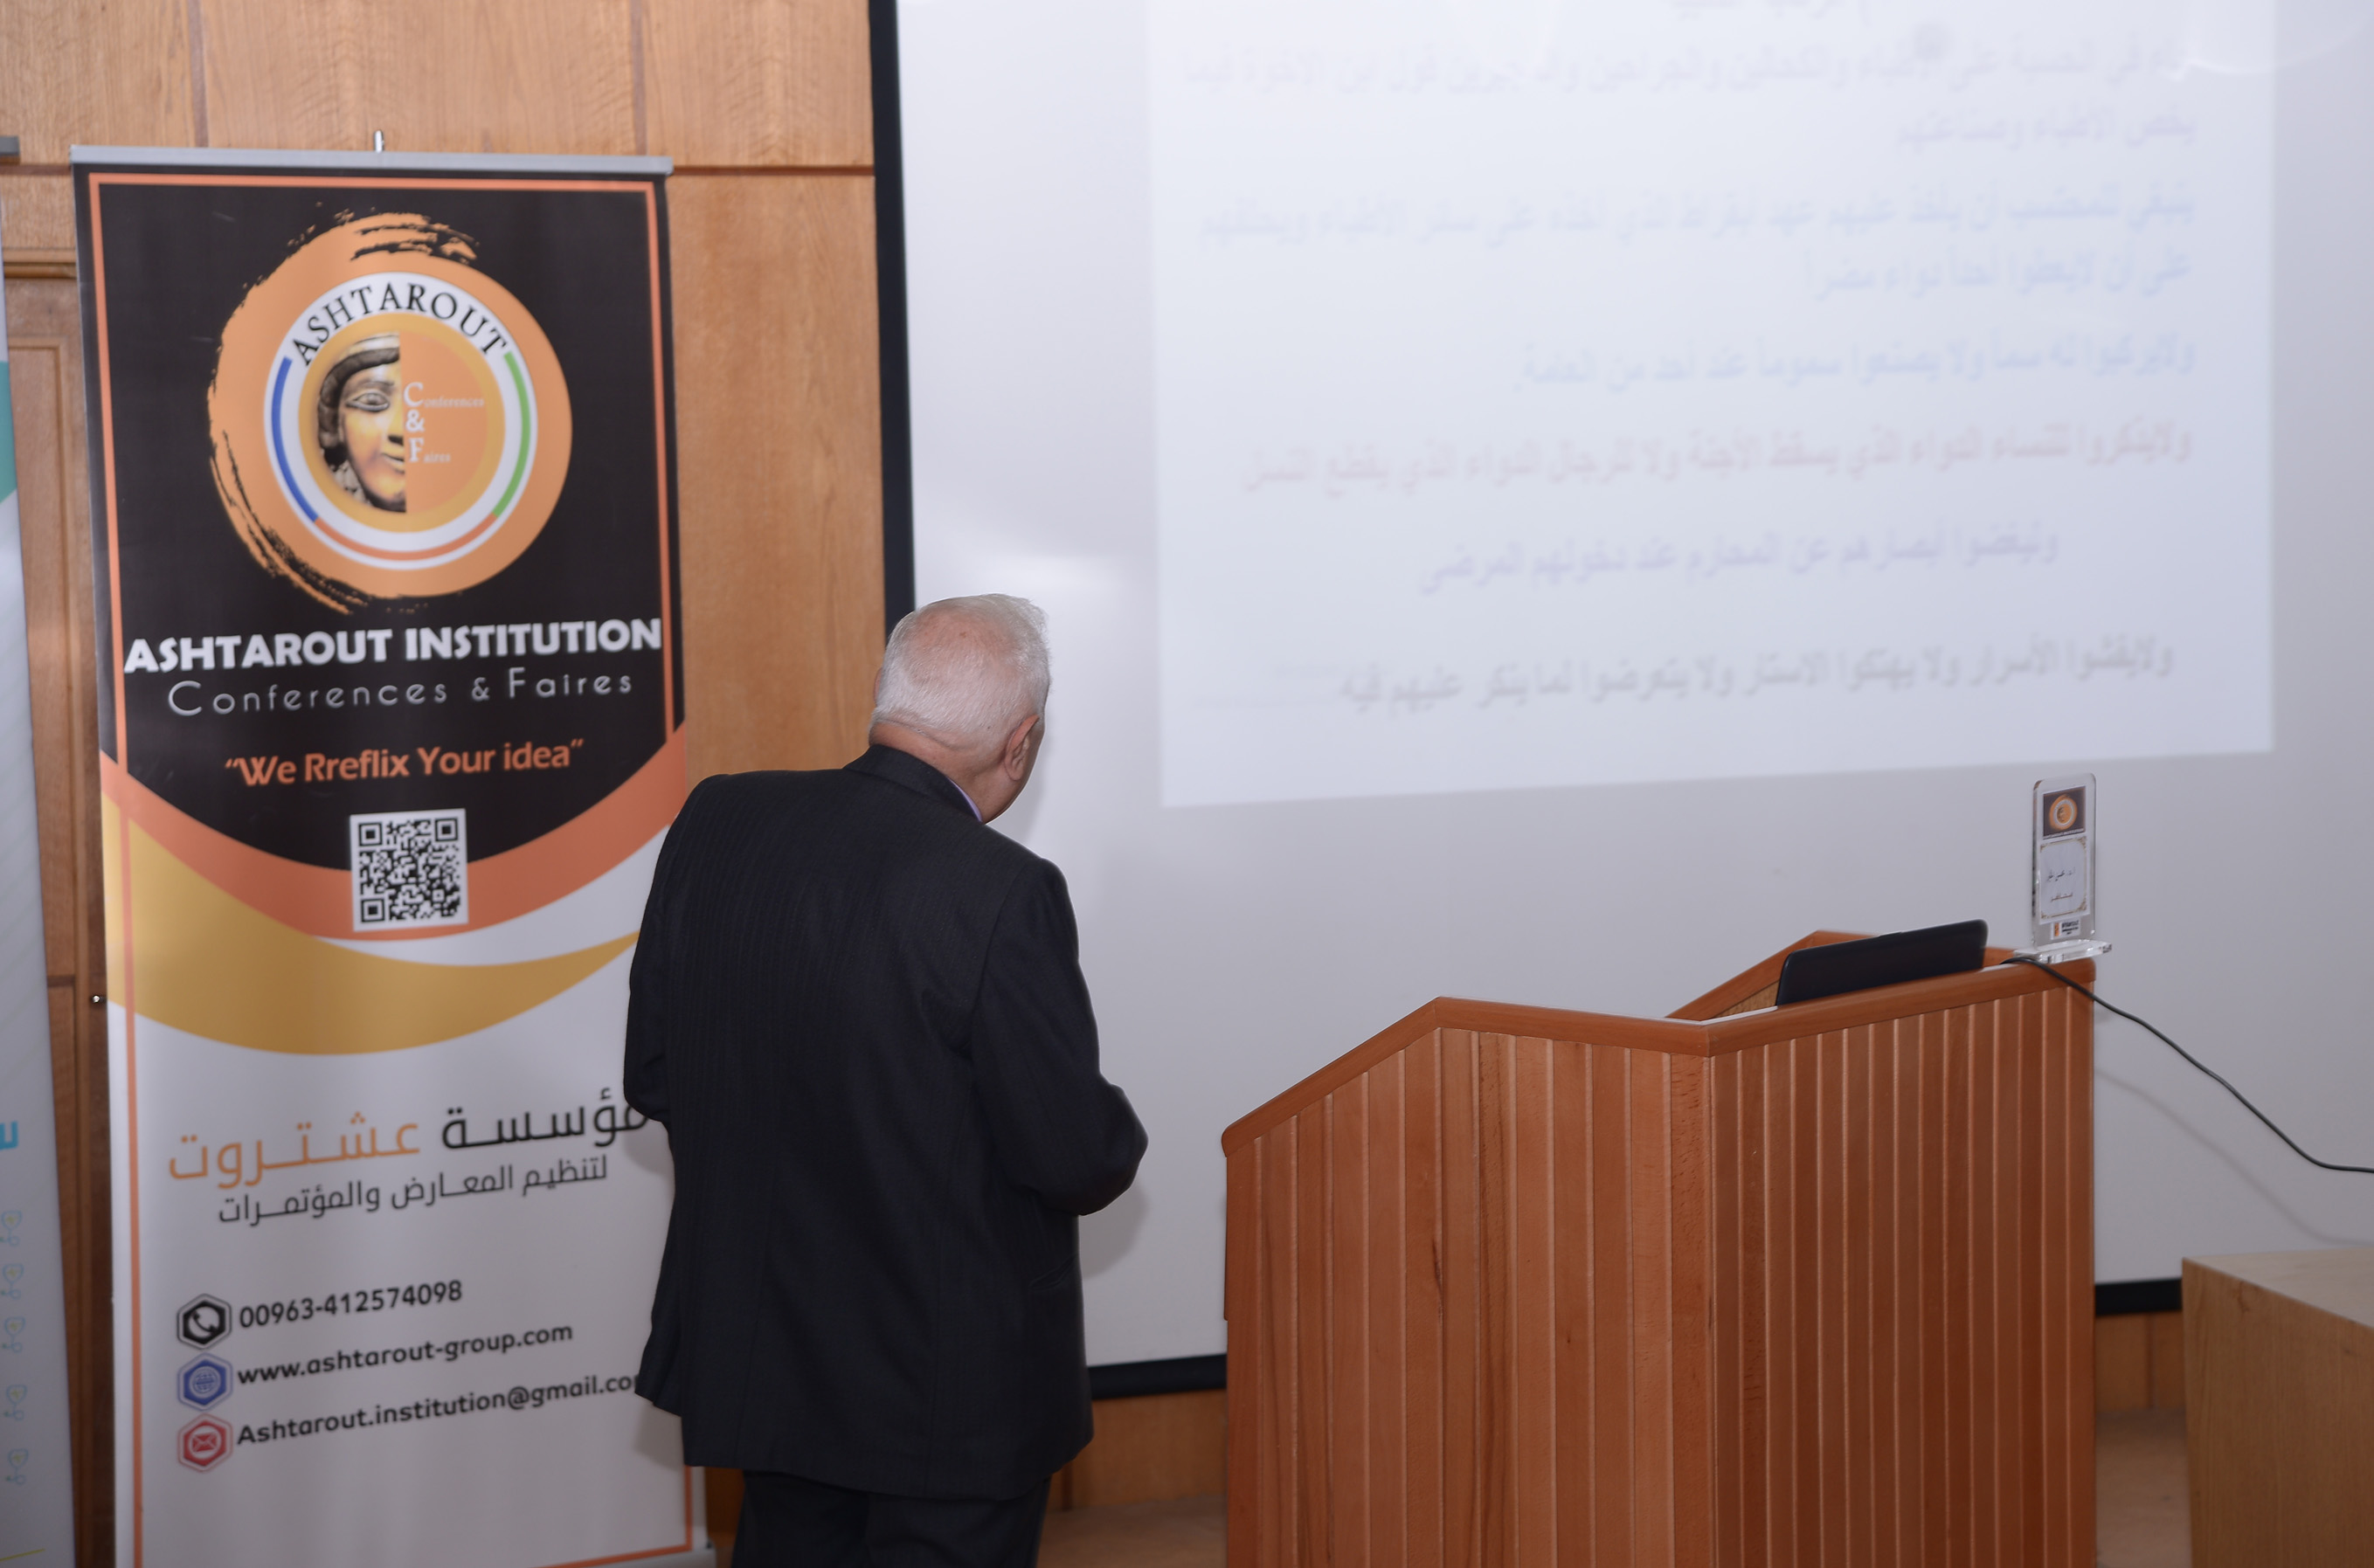 صور من فعاليات اليوم الثالث للمؤتمر كلية الطب البشري في جامعة تشرين